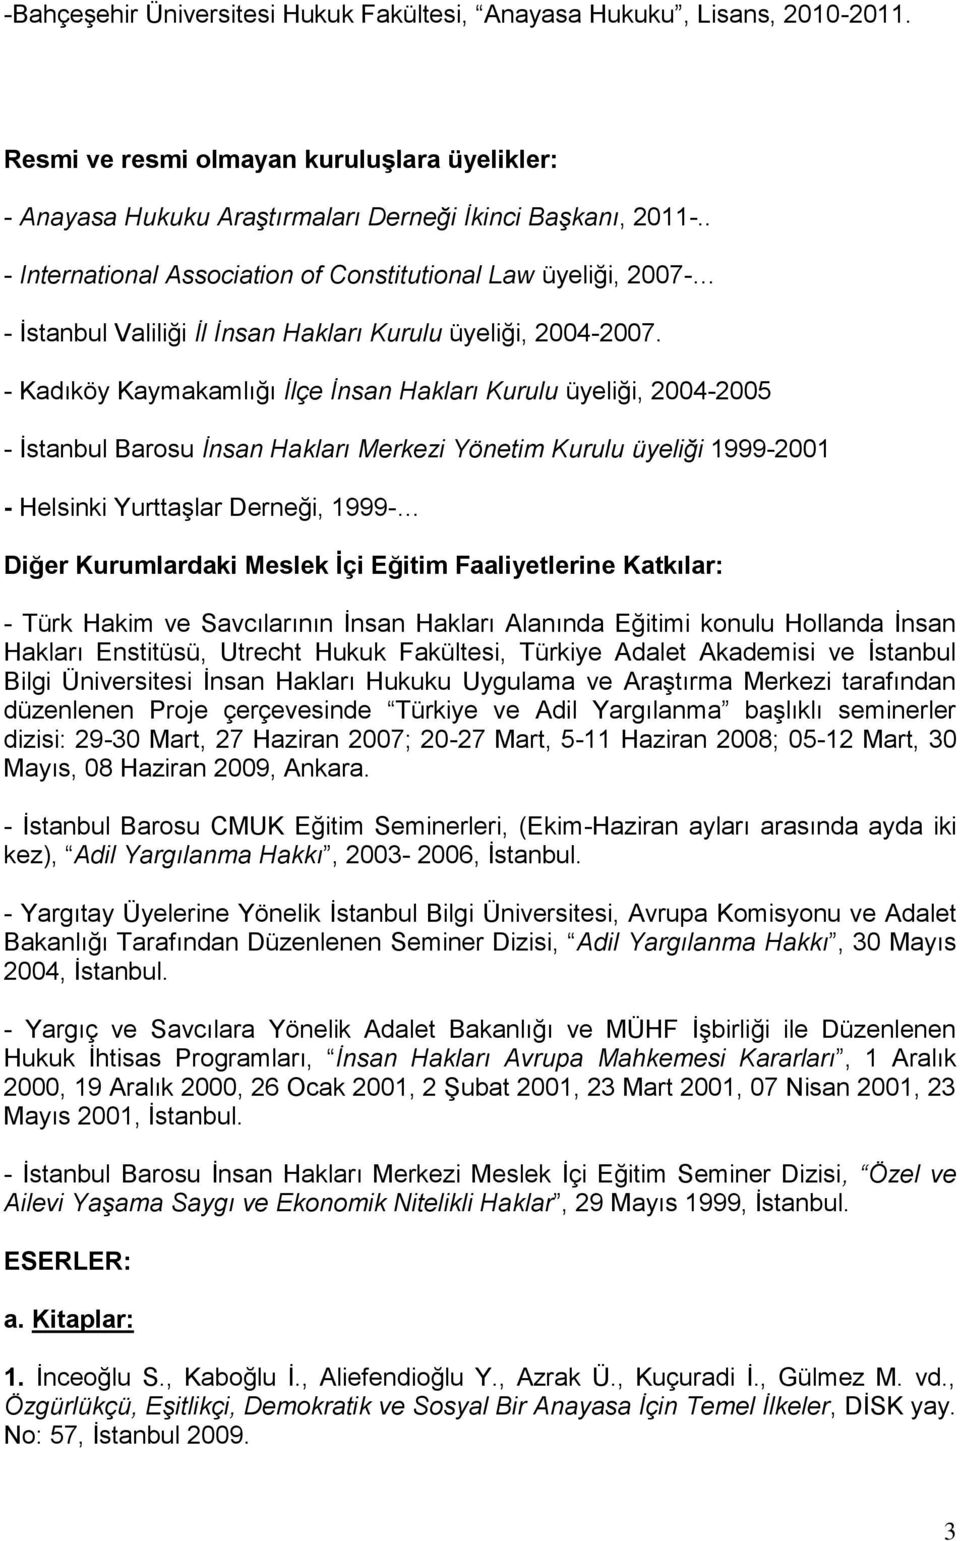 - Kadıköy Kaymakamlığı İlçe İnsan Hakları Kurulu üyeliği, 2004-2005 - İstanbul Barosu İnsan Hakları Merkezi Yönetim Kurulu üyeliği 1999-2001 - Helsinki Yurttaşlar Derneği, 1999- Diğer Kurumlardaki